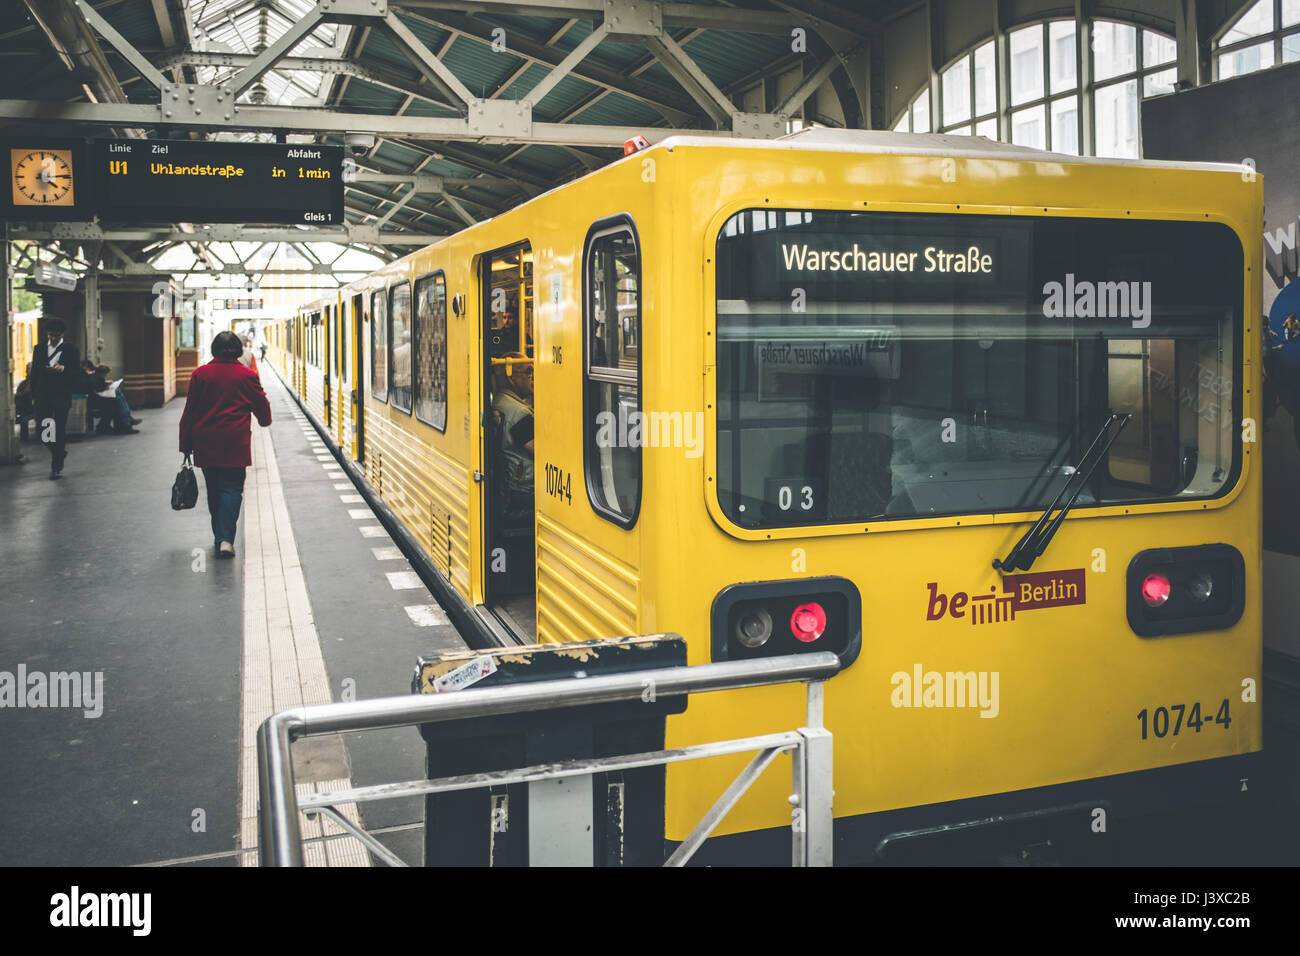 Berlin, Deutschland - 3. Mai 2017: Berlin u-Bahn am Bahnhof (Warschauer Str) in Berlin, Deutschland Stockfoto